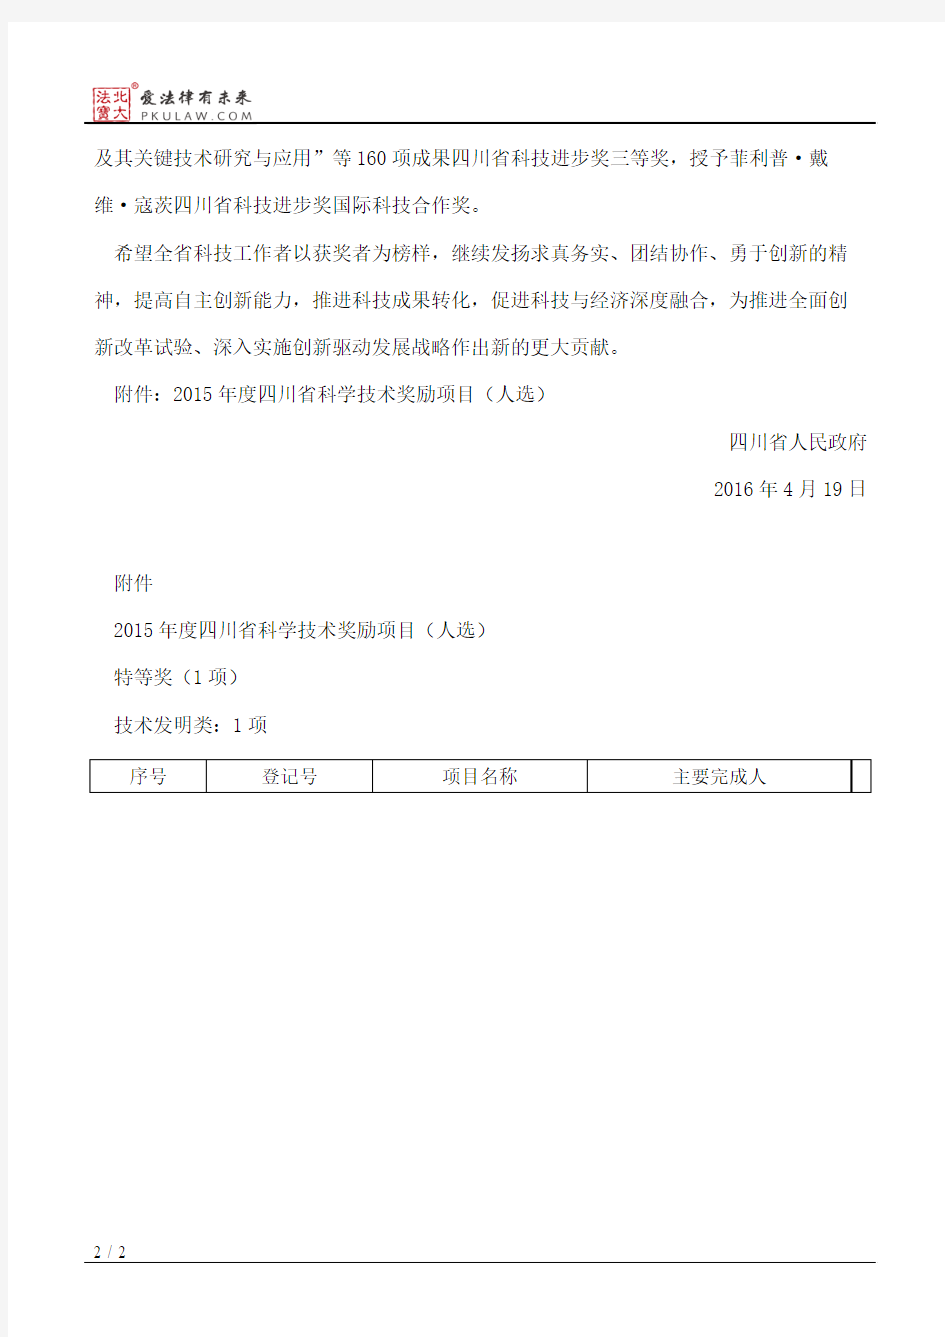 四川省人民政府关于授予2015年度四川省科学技术奖励的决定